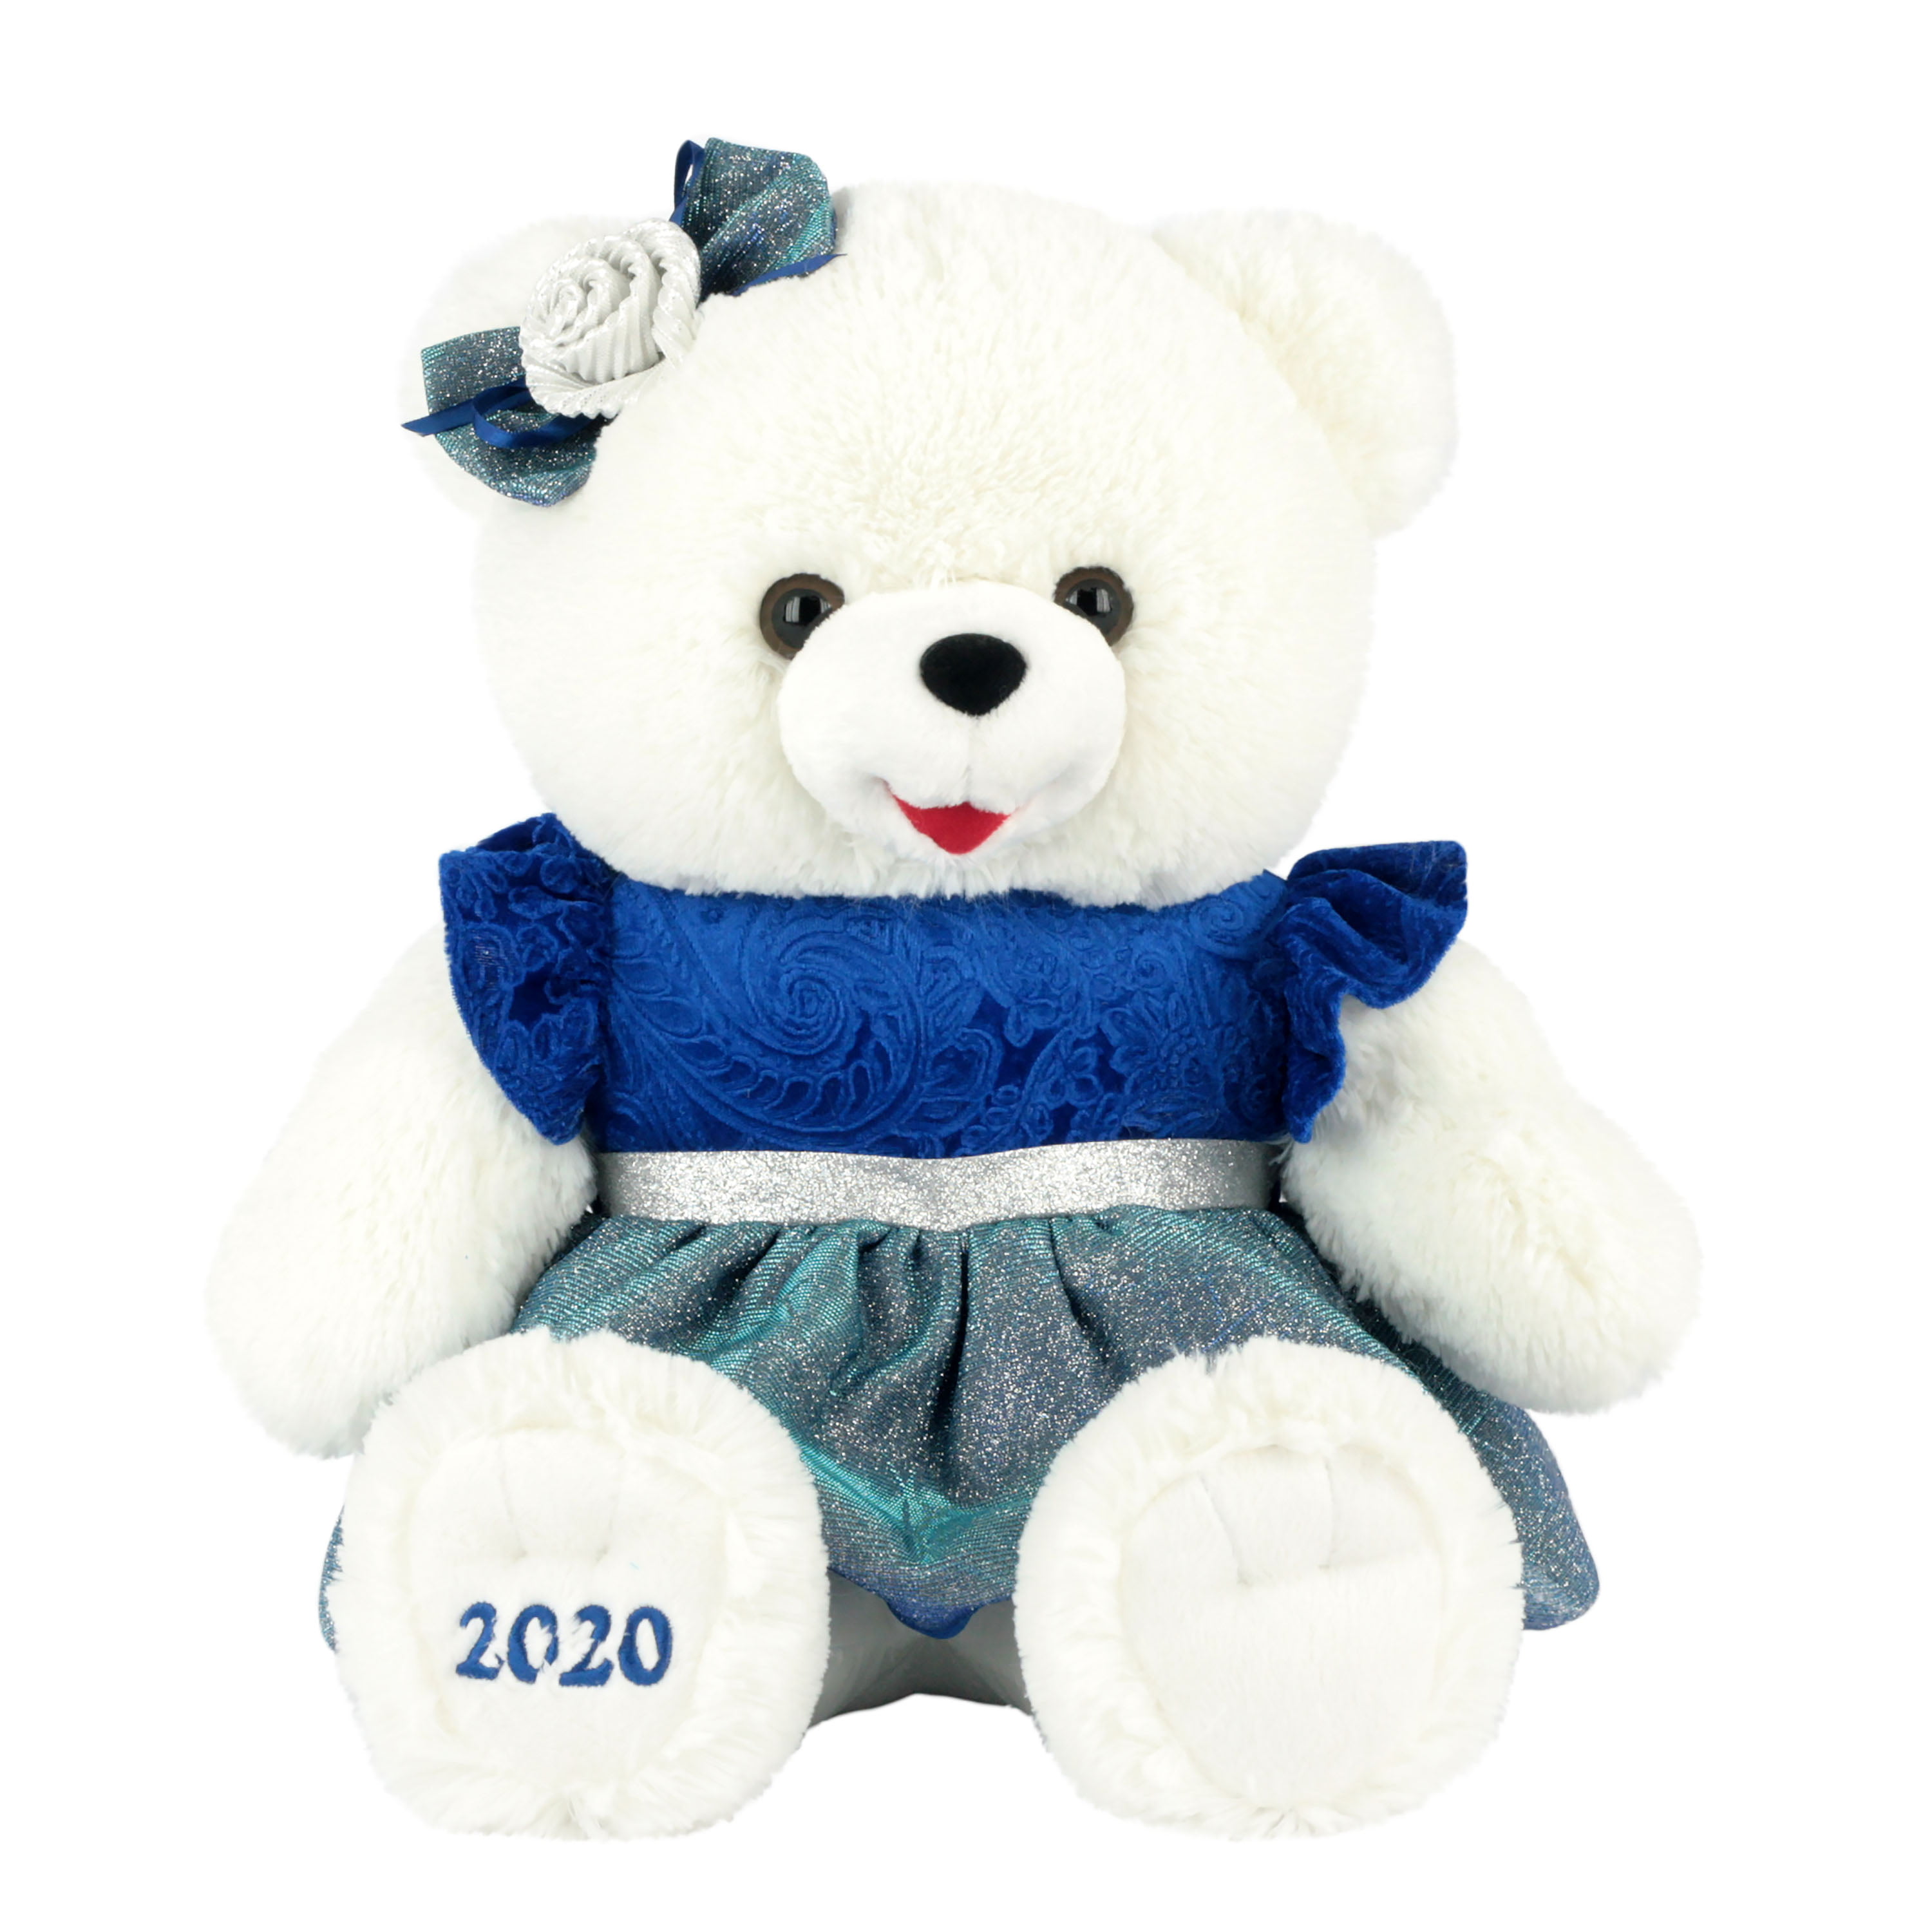 2020 Little Snowflake 12” Teddy Bears Plush Holiday Christmas Light Blue AR189 